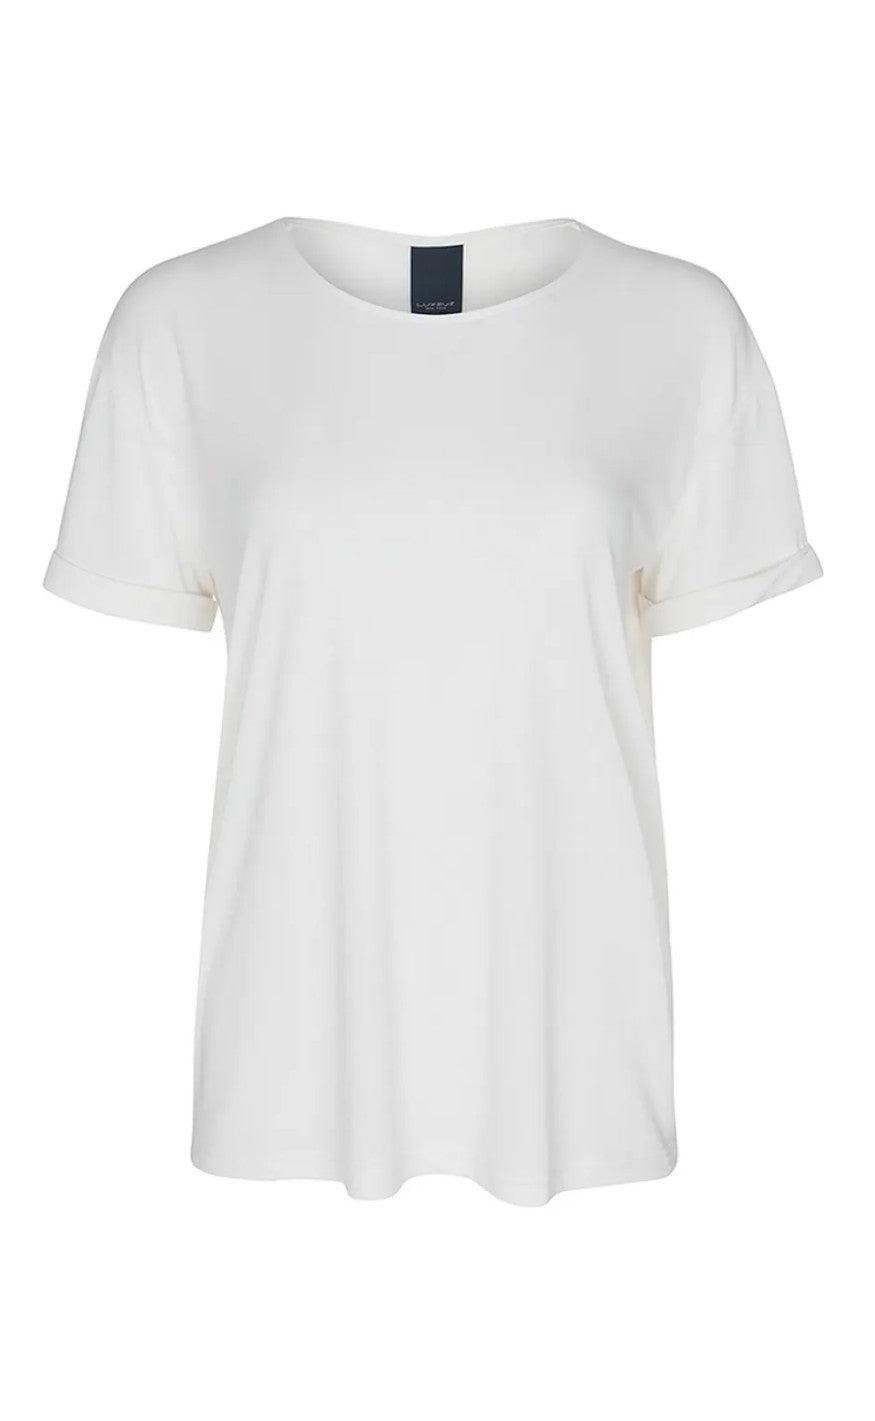 5: One Two Luxzuz -  Karin T-shirt - Cream